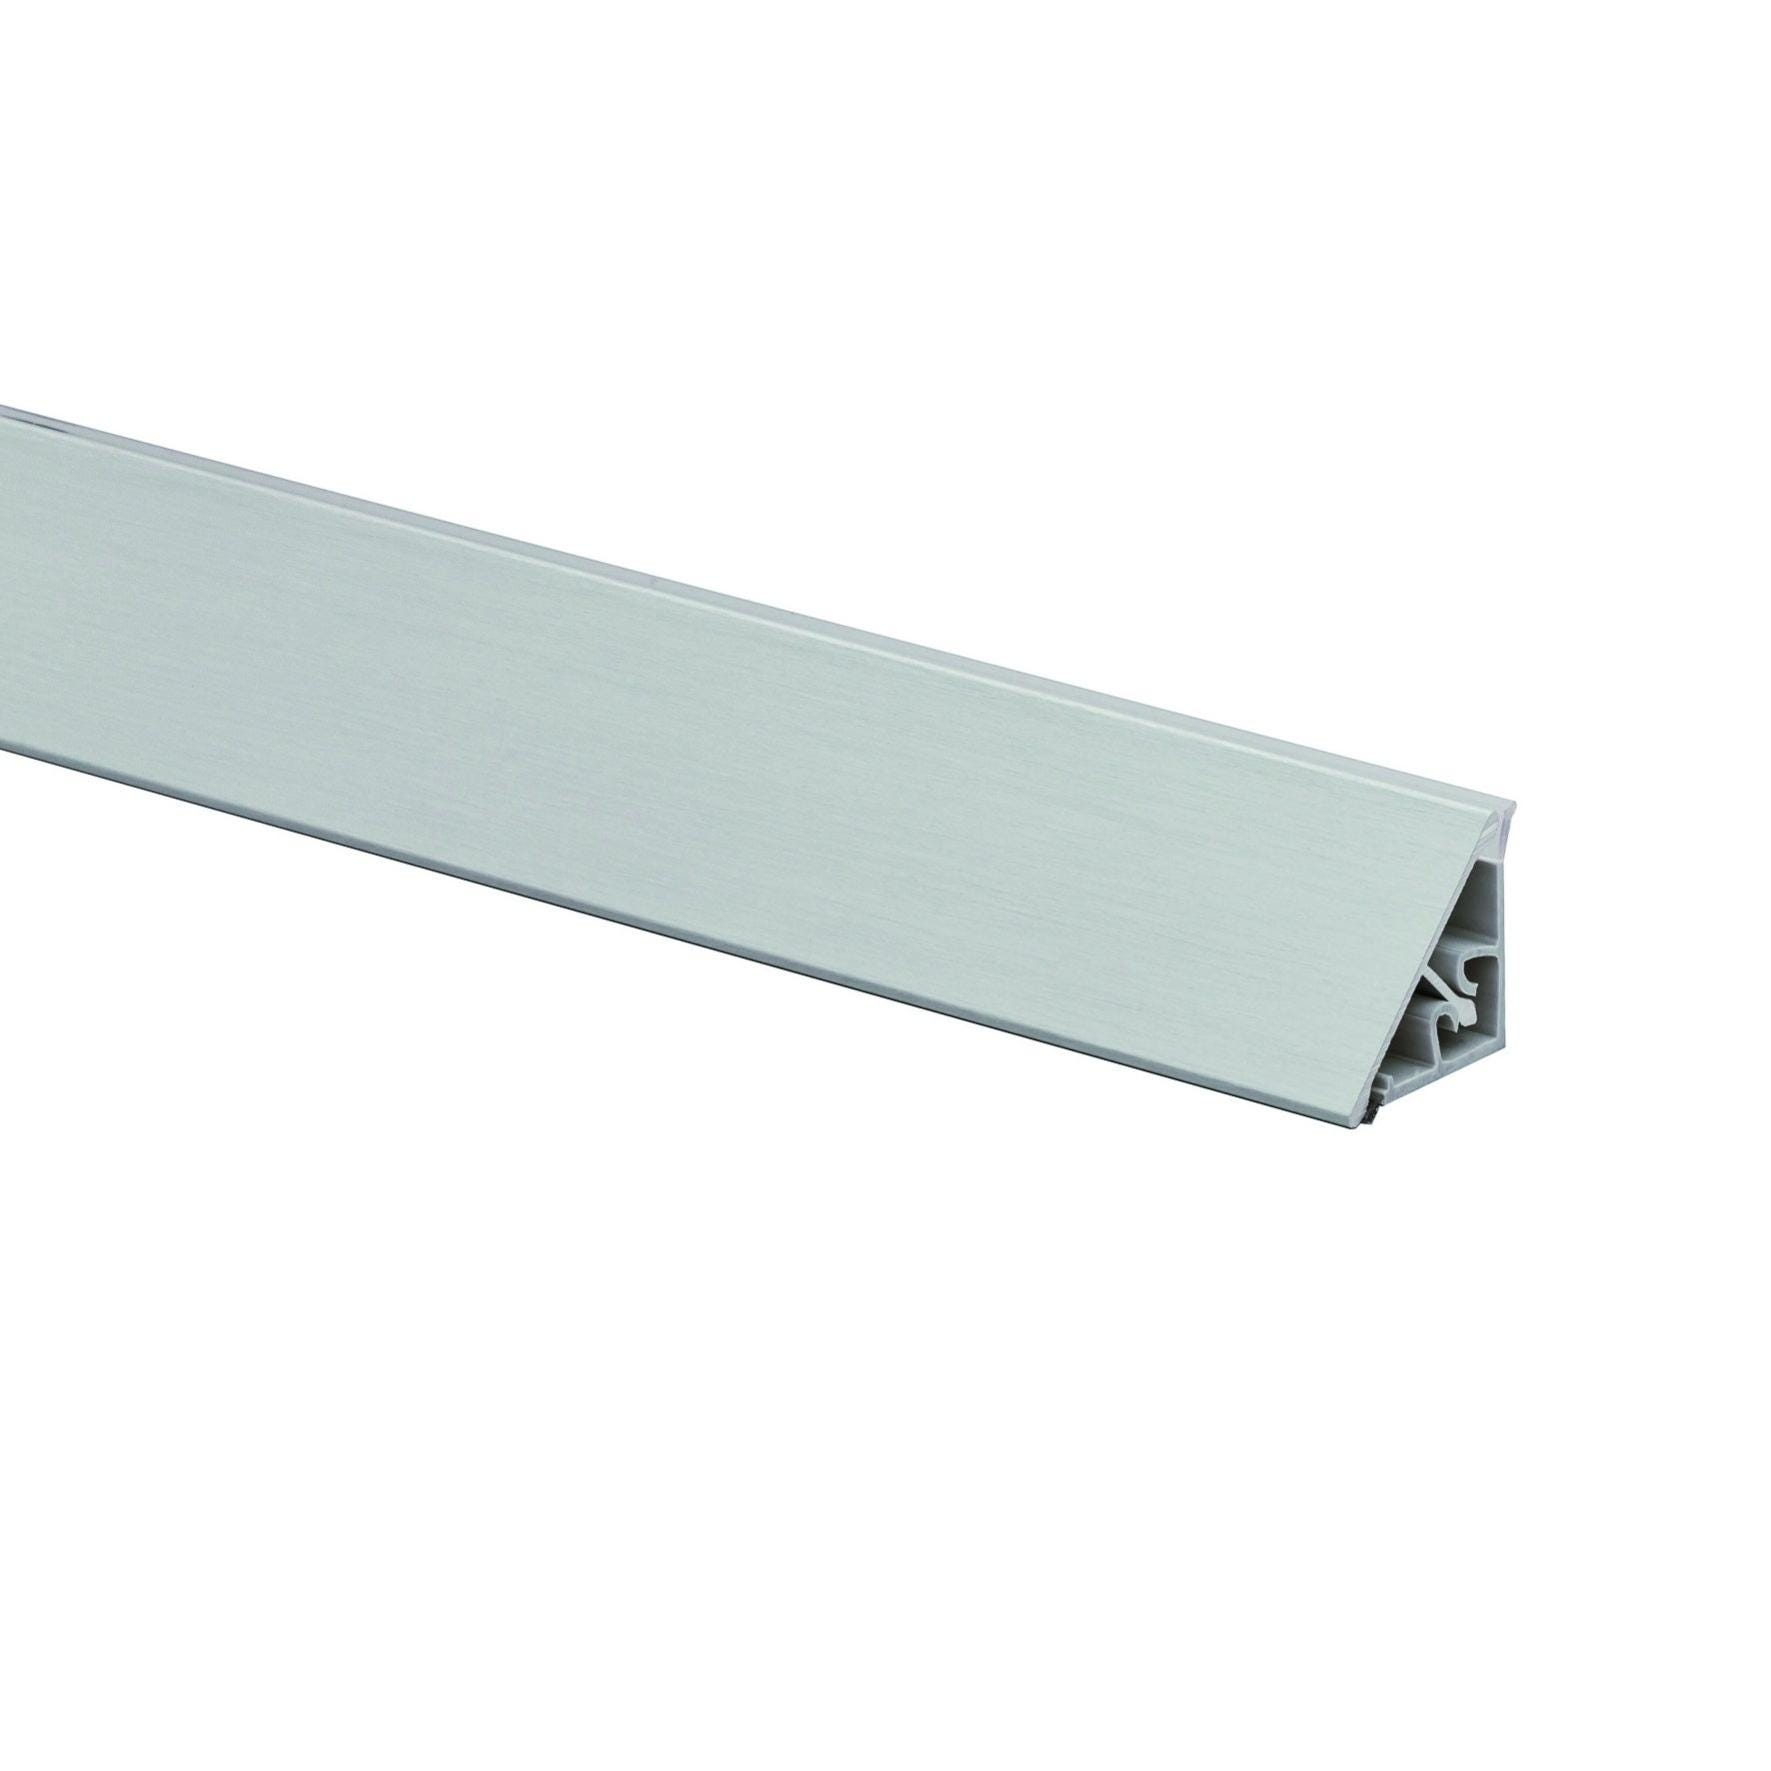 Alzatina alluminio grigio L 300 cm x H 2.7 cm spessore 19 mm